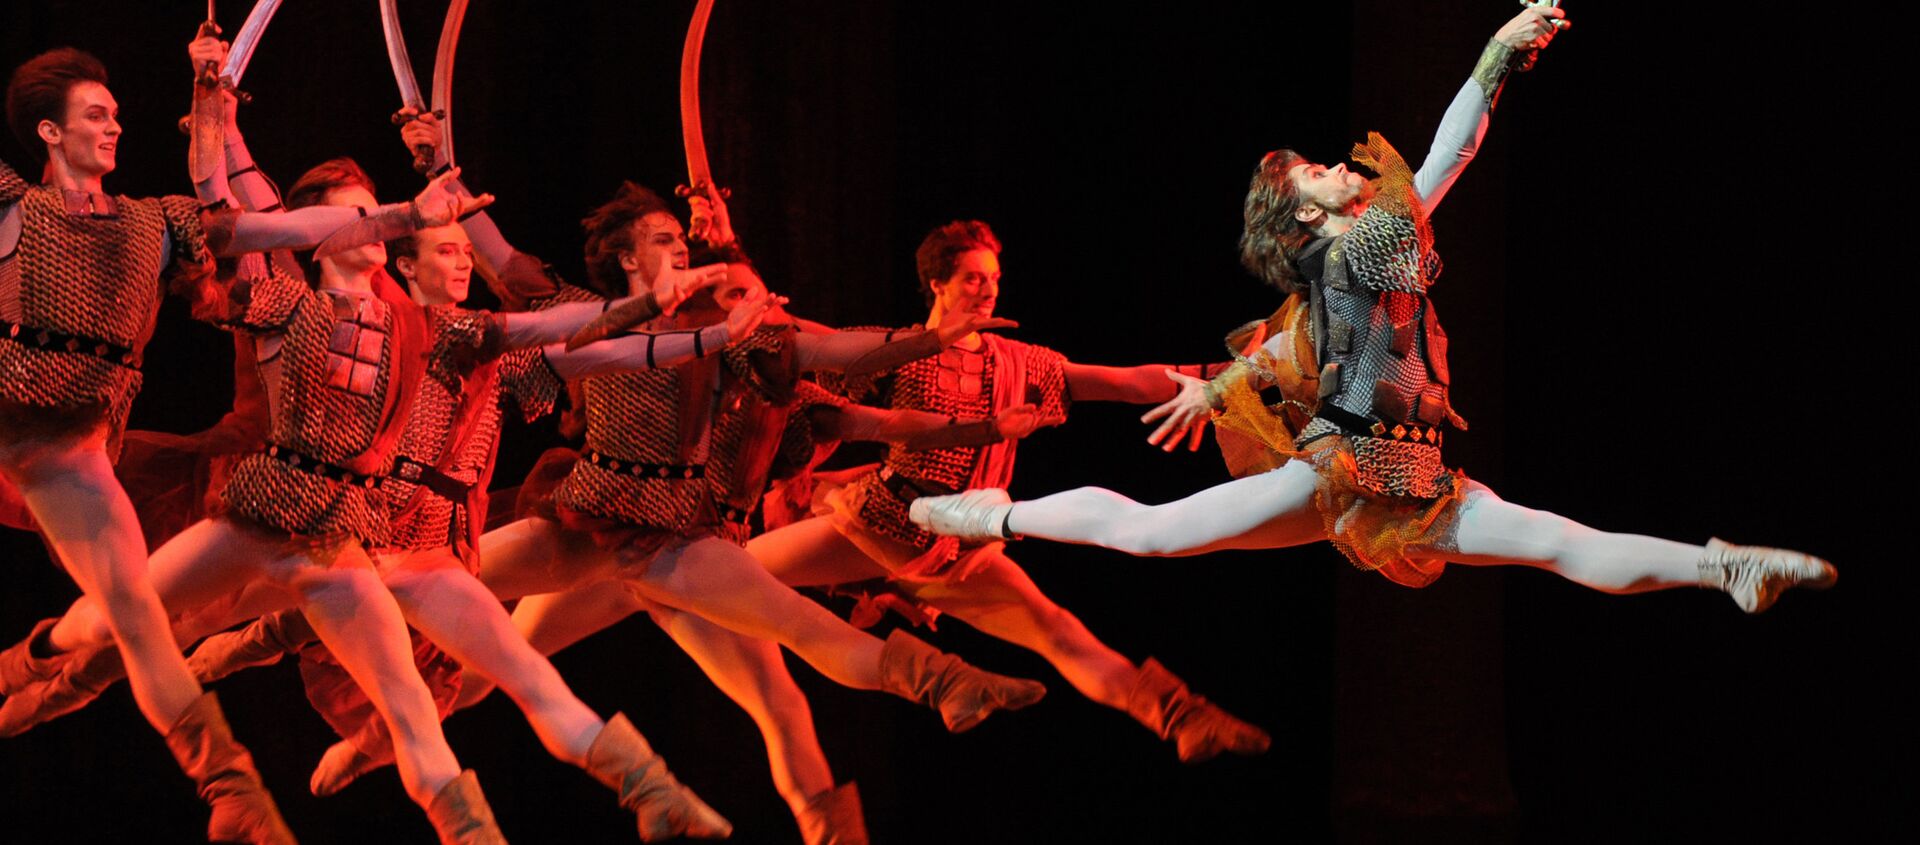 Artiom Ovcharenko, el primer bailarín del teatro Bolshói, en una de las escenas del ballet 'Iván el Terrible' - Sputnik Mundo, 1920, 21.02.2018